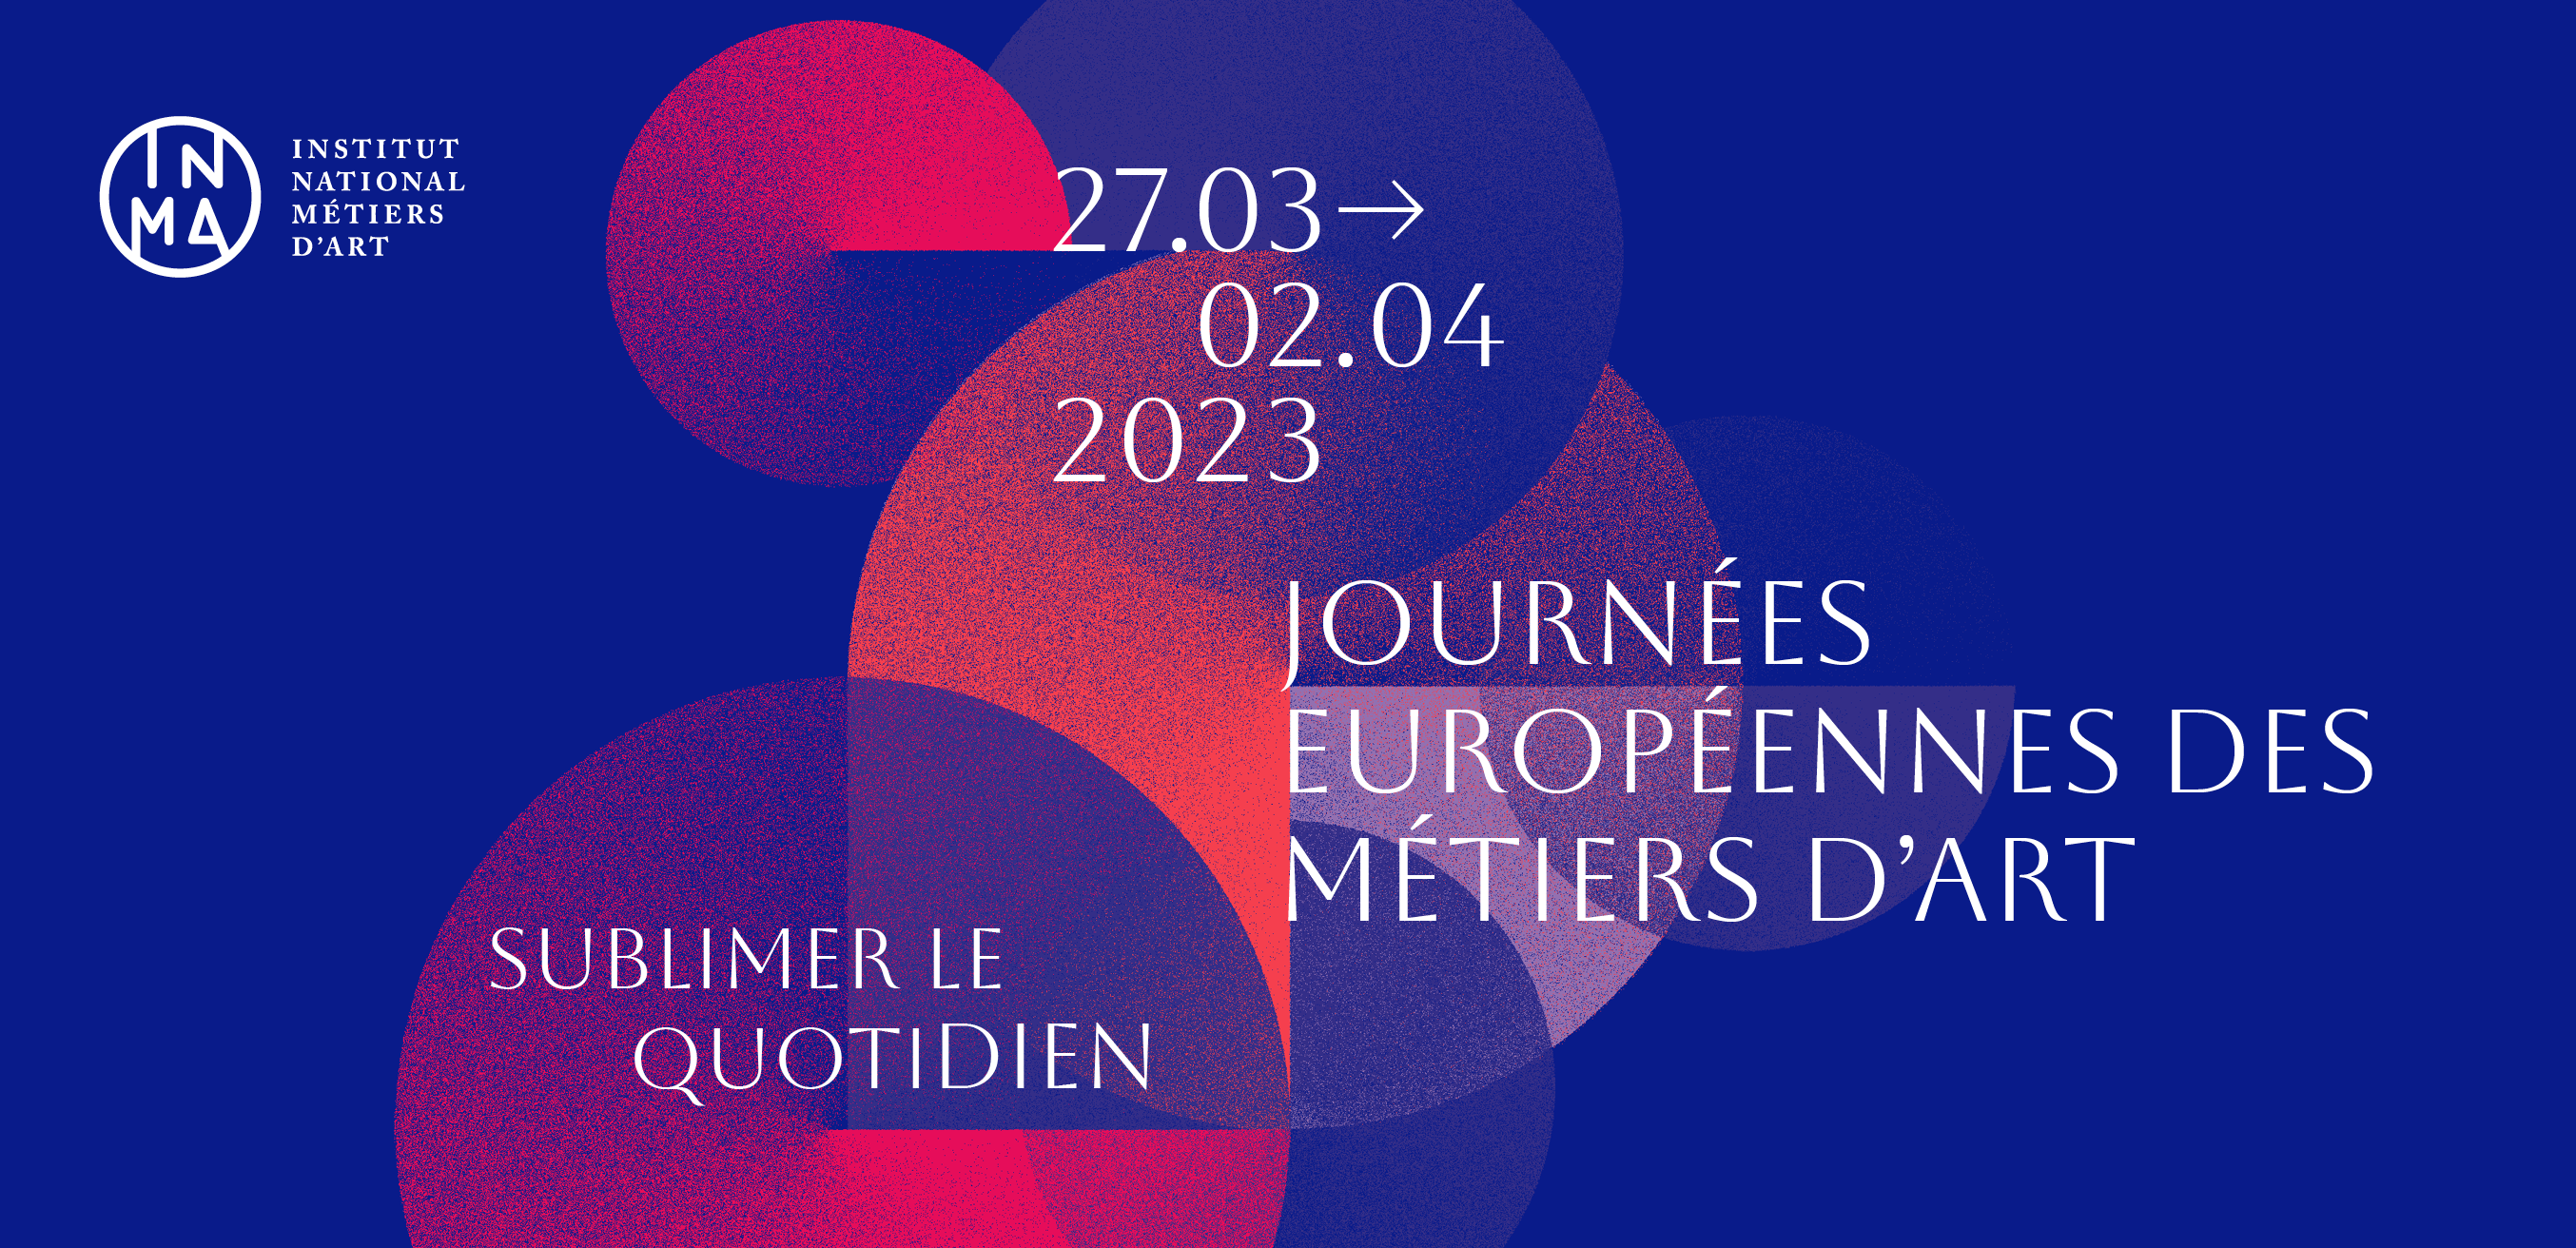 Journées européennes des métiers d'art JEMA 2023